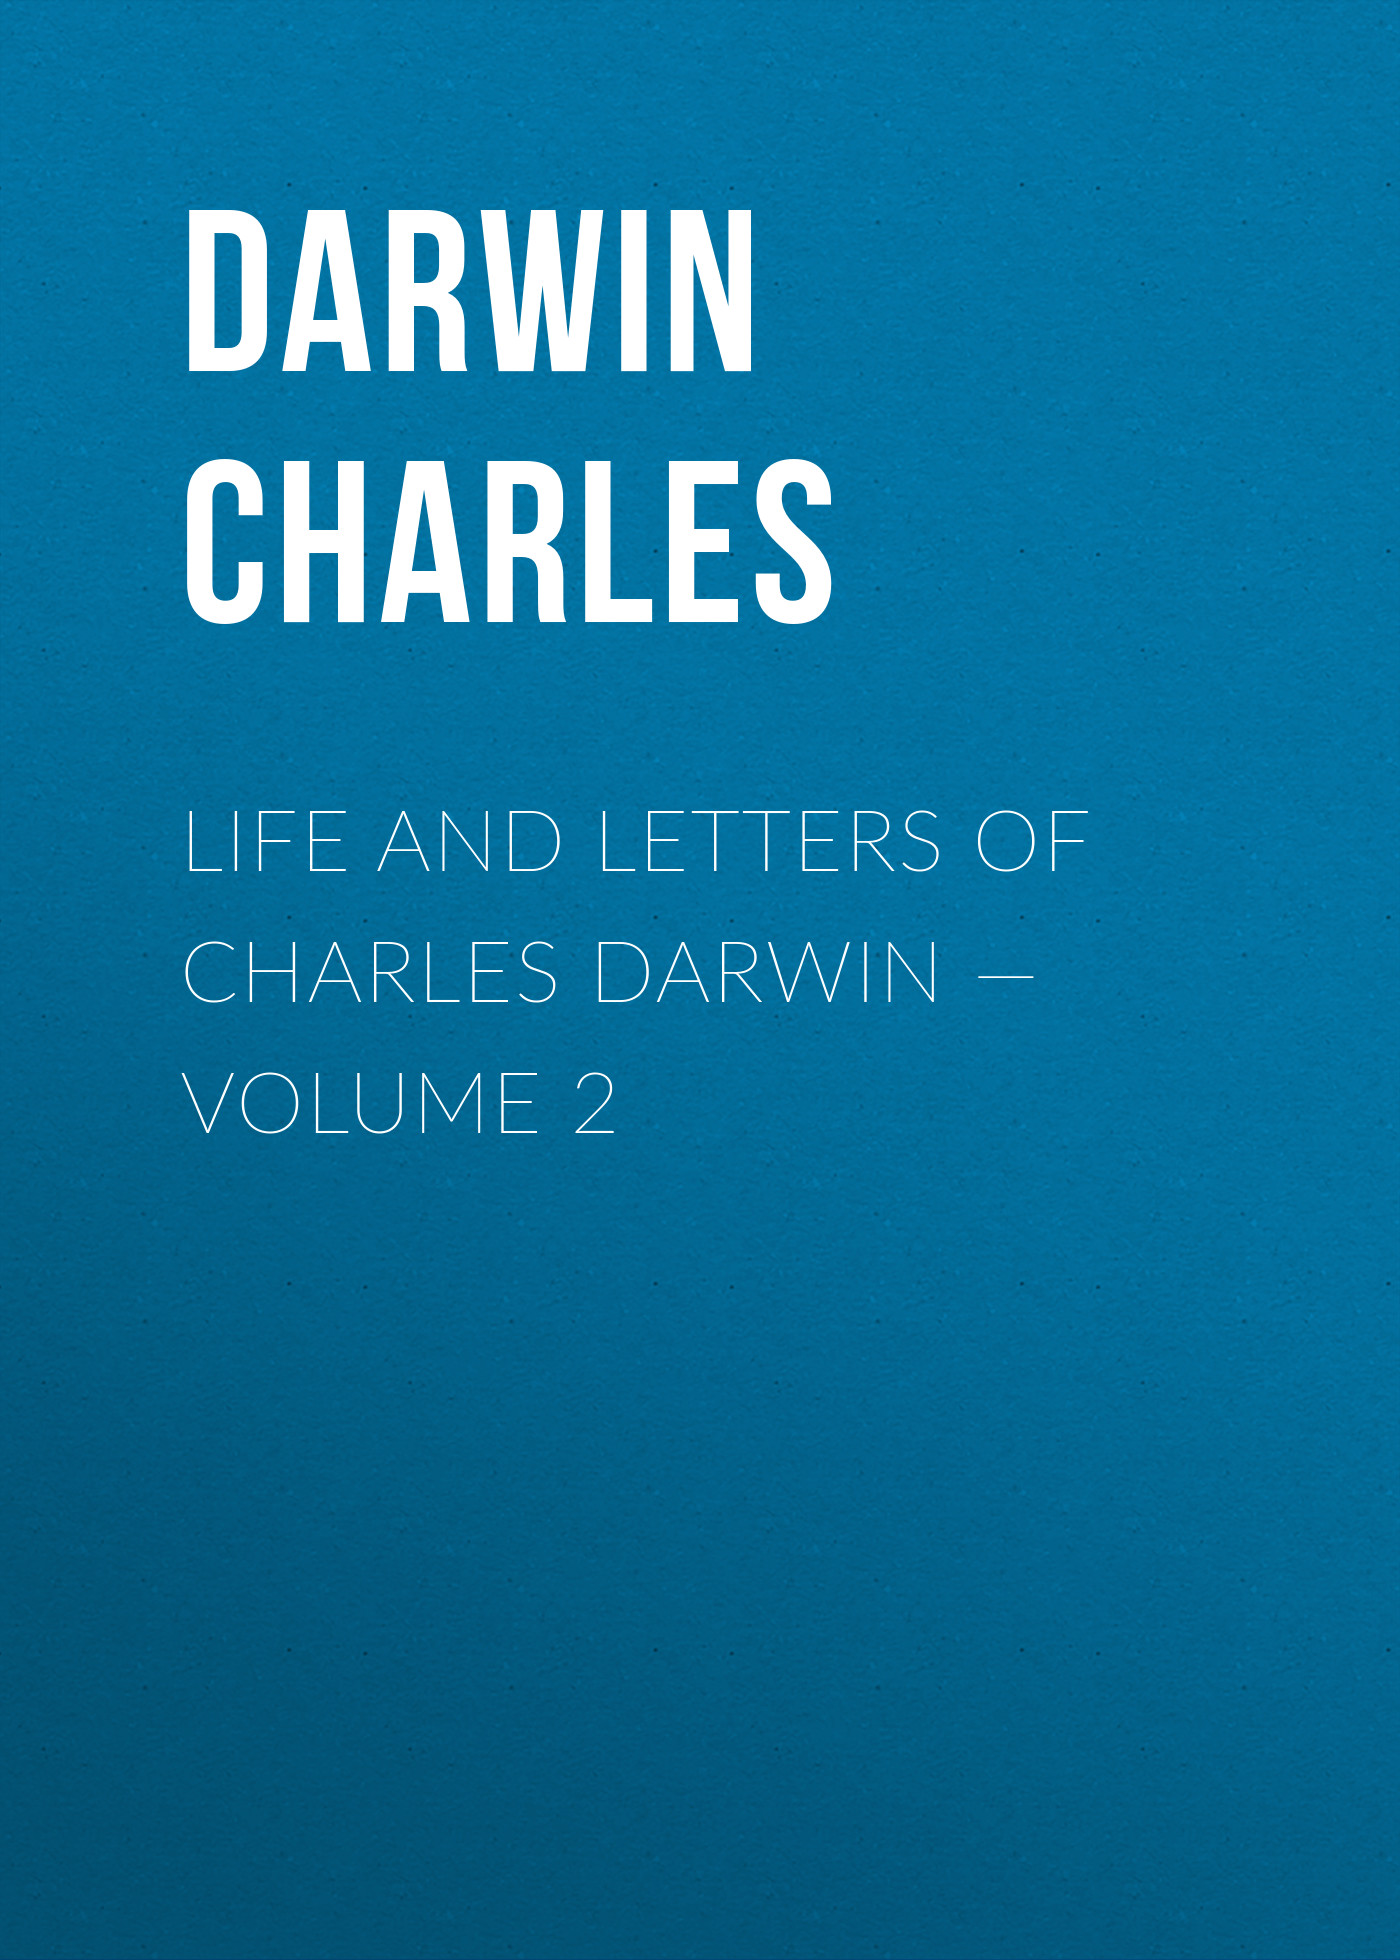 Книга Life and Letters of Charles Darwin – Volume 2 из серии , созданная Charles Darwin, может относится к жанру Зарубежная старинная литература, Зарубежная классика. Стоимость электронной книги Life and Letters of Charles Darwin – Volume 2 с идентификатором 25091748 составляет 0 руб.